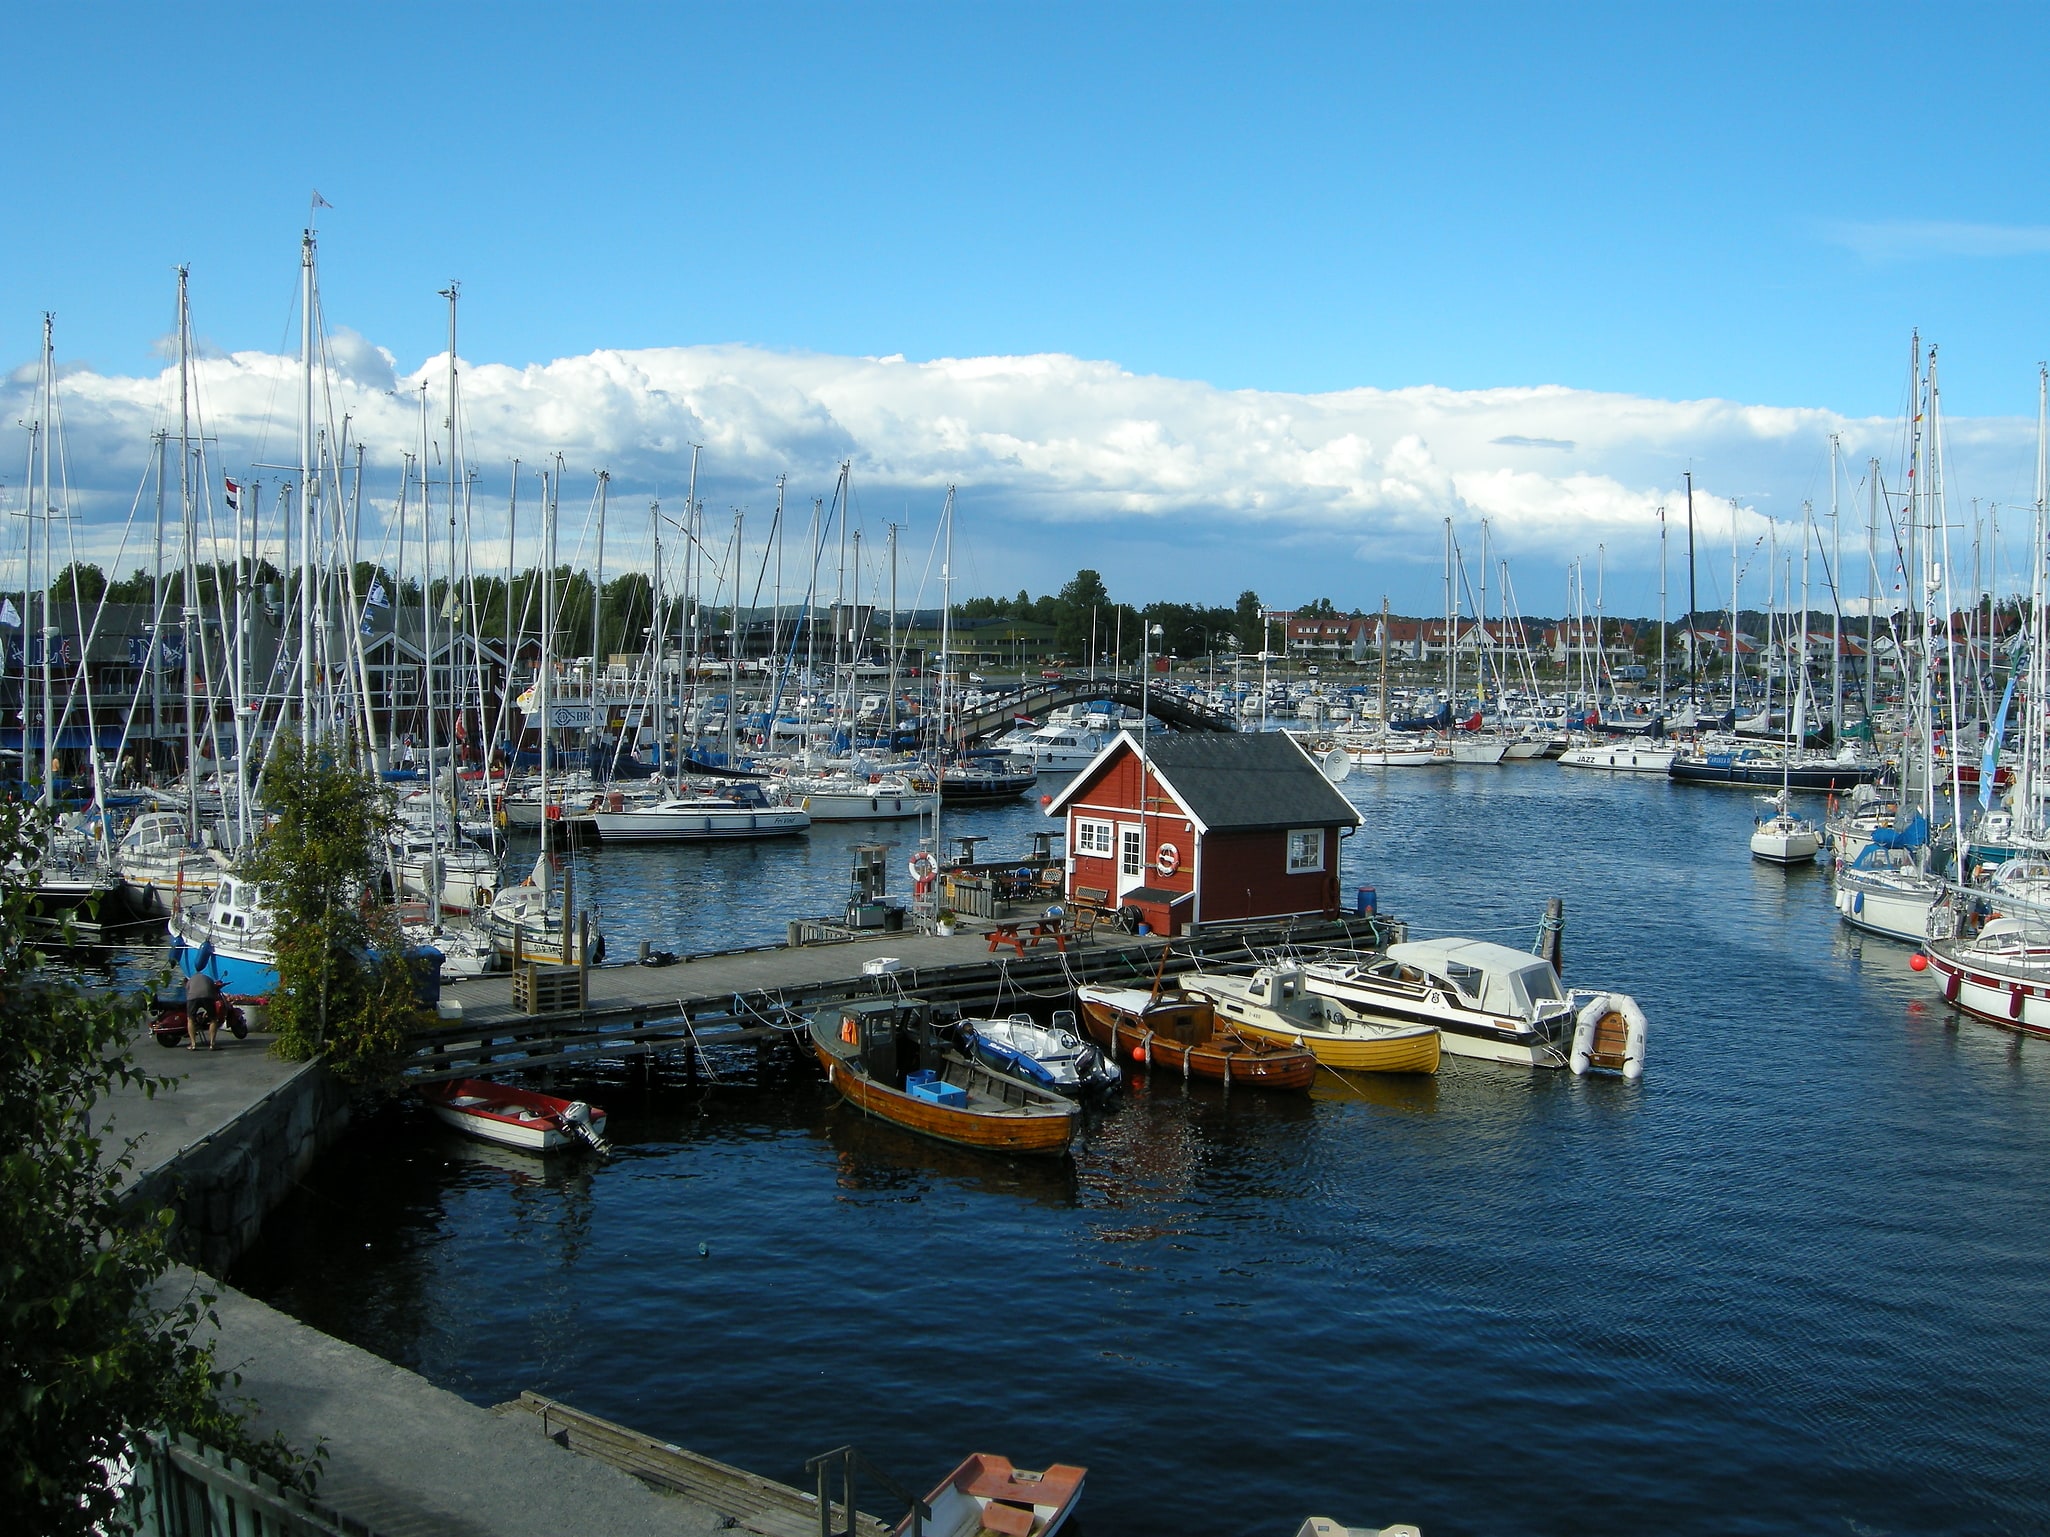 Stavern, Norway